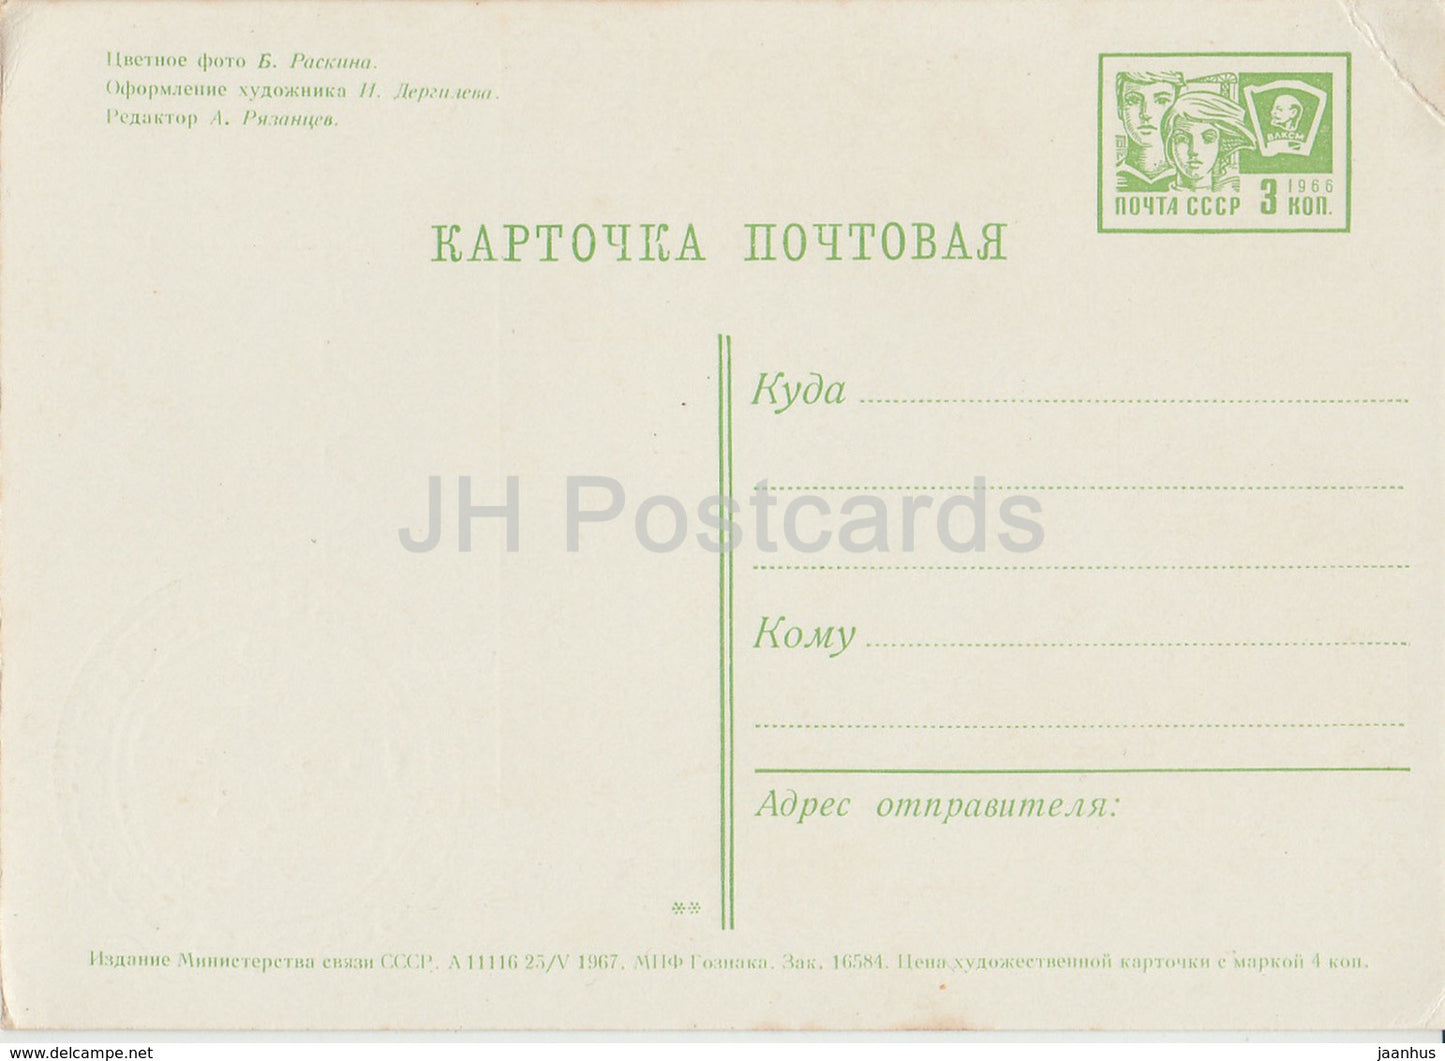 Carte de vœux du Nouvel An - Forêt d’hiver - Ded Moroz - entier postal - 1967 - Russie URSS - inutilisé